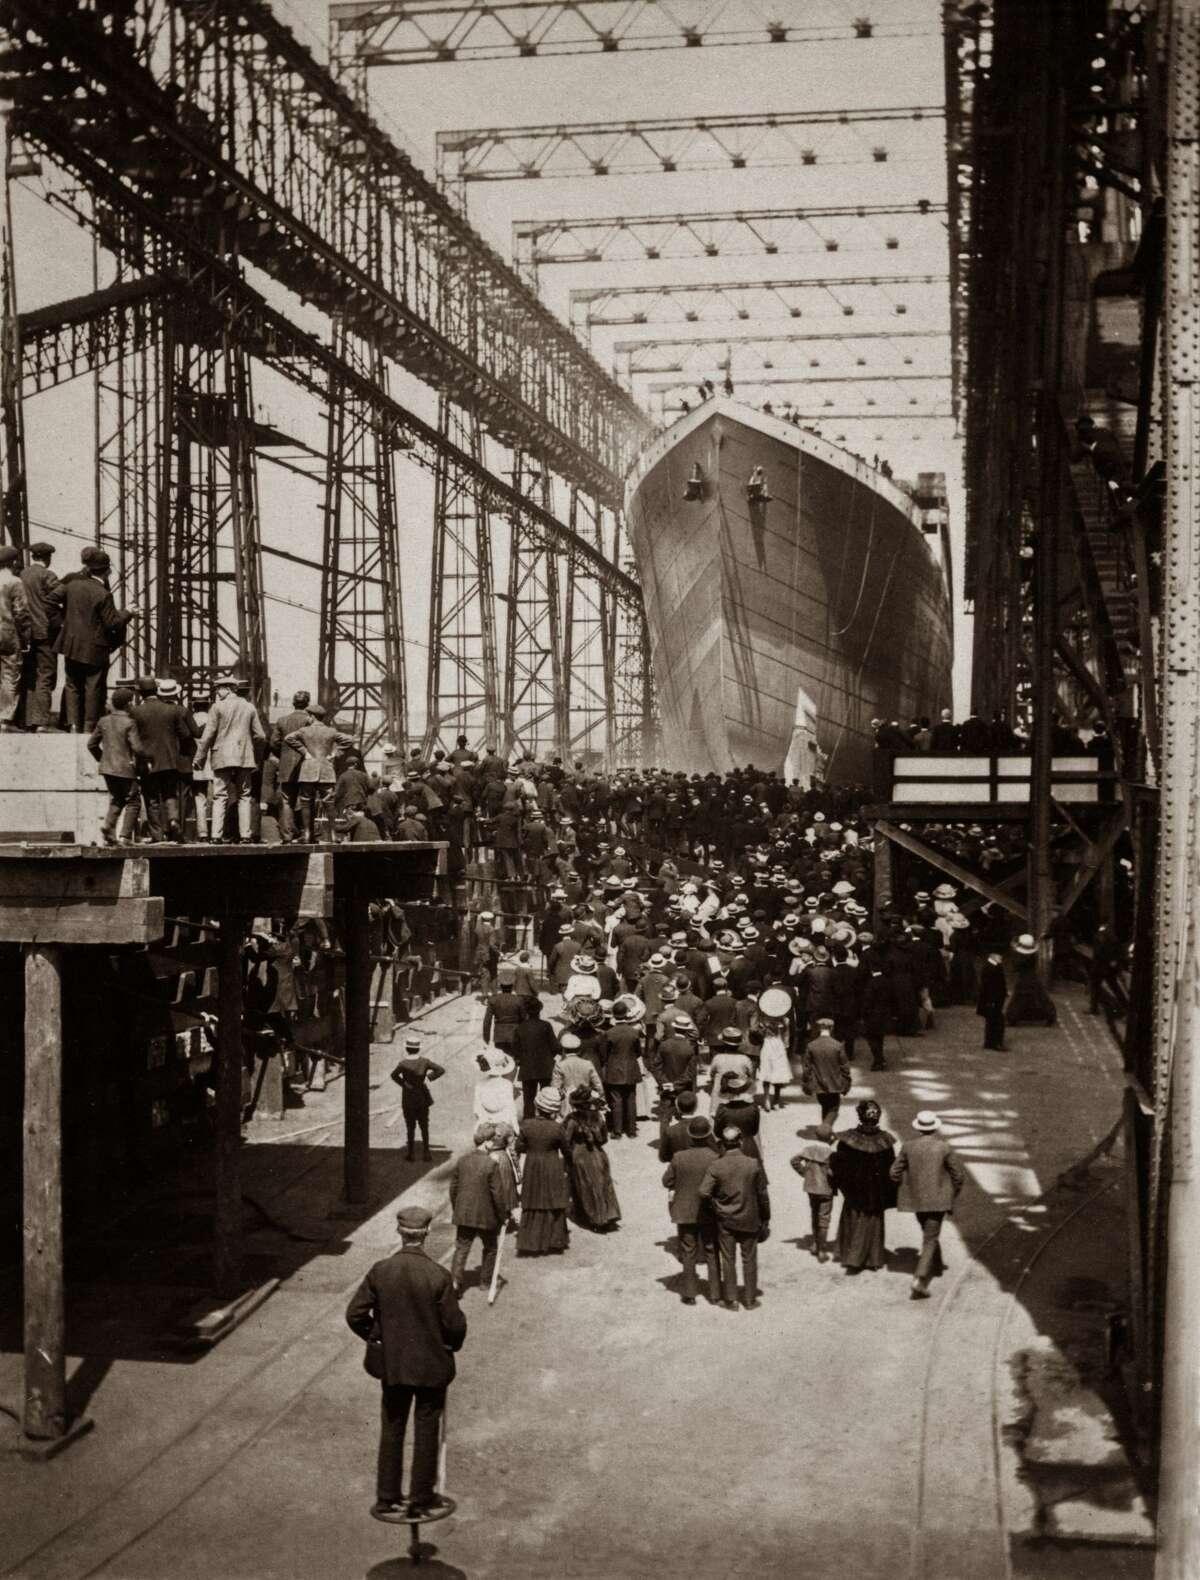 Newlyreleased photos of Titanic show ship before its tragic demise